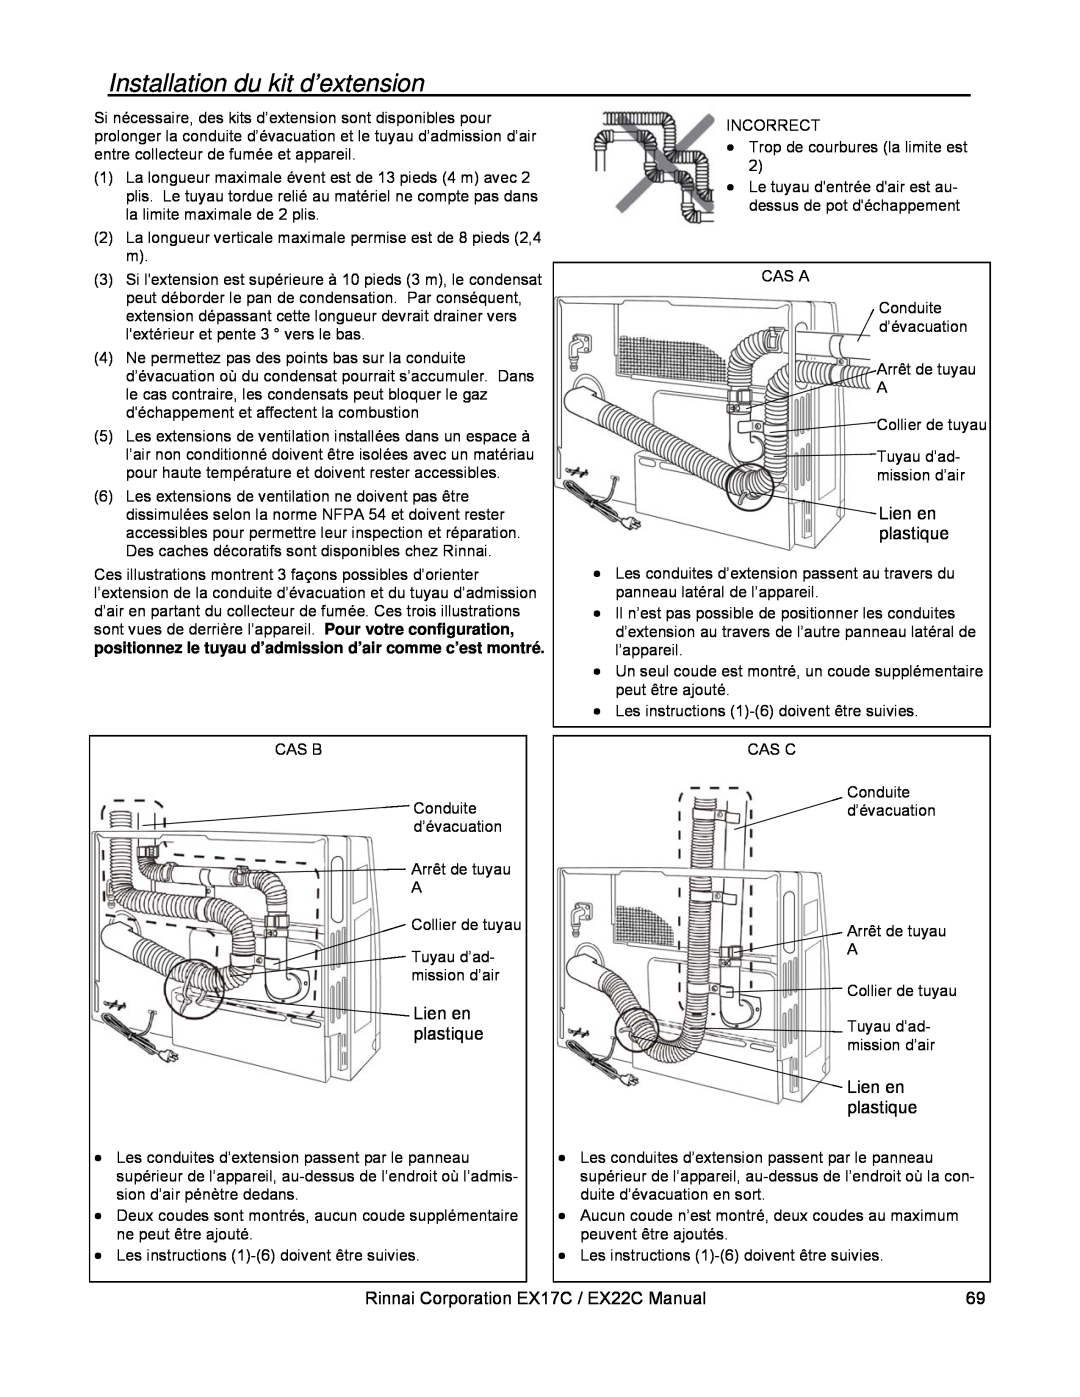 Rinnai installation manual Installation du kit d’extension, Lien en plastique, Rinnai Corporation EX17C / EX22C Manual 